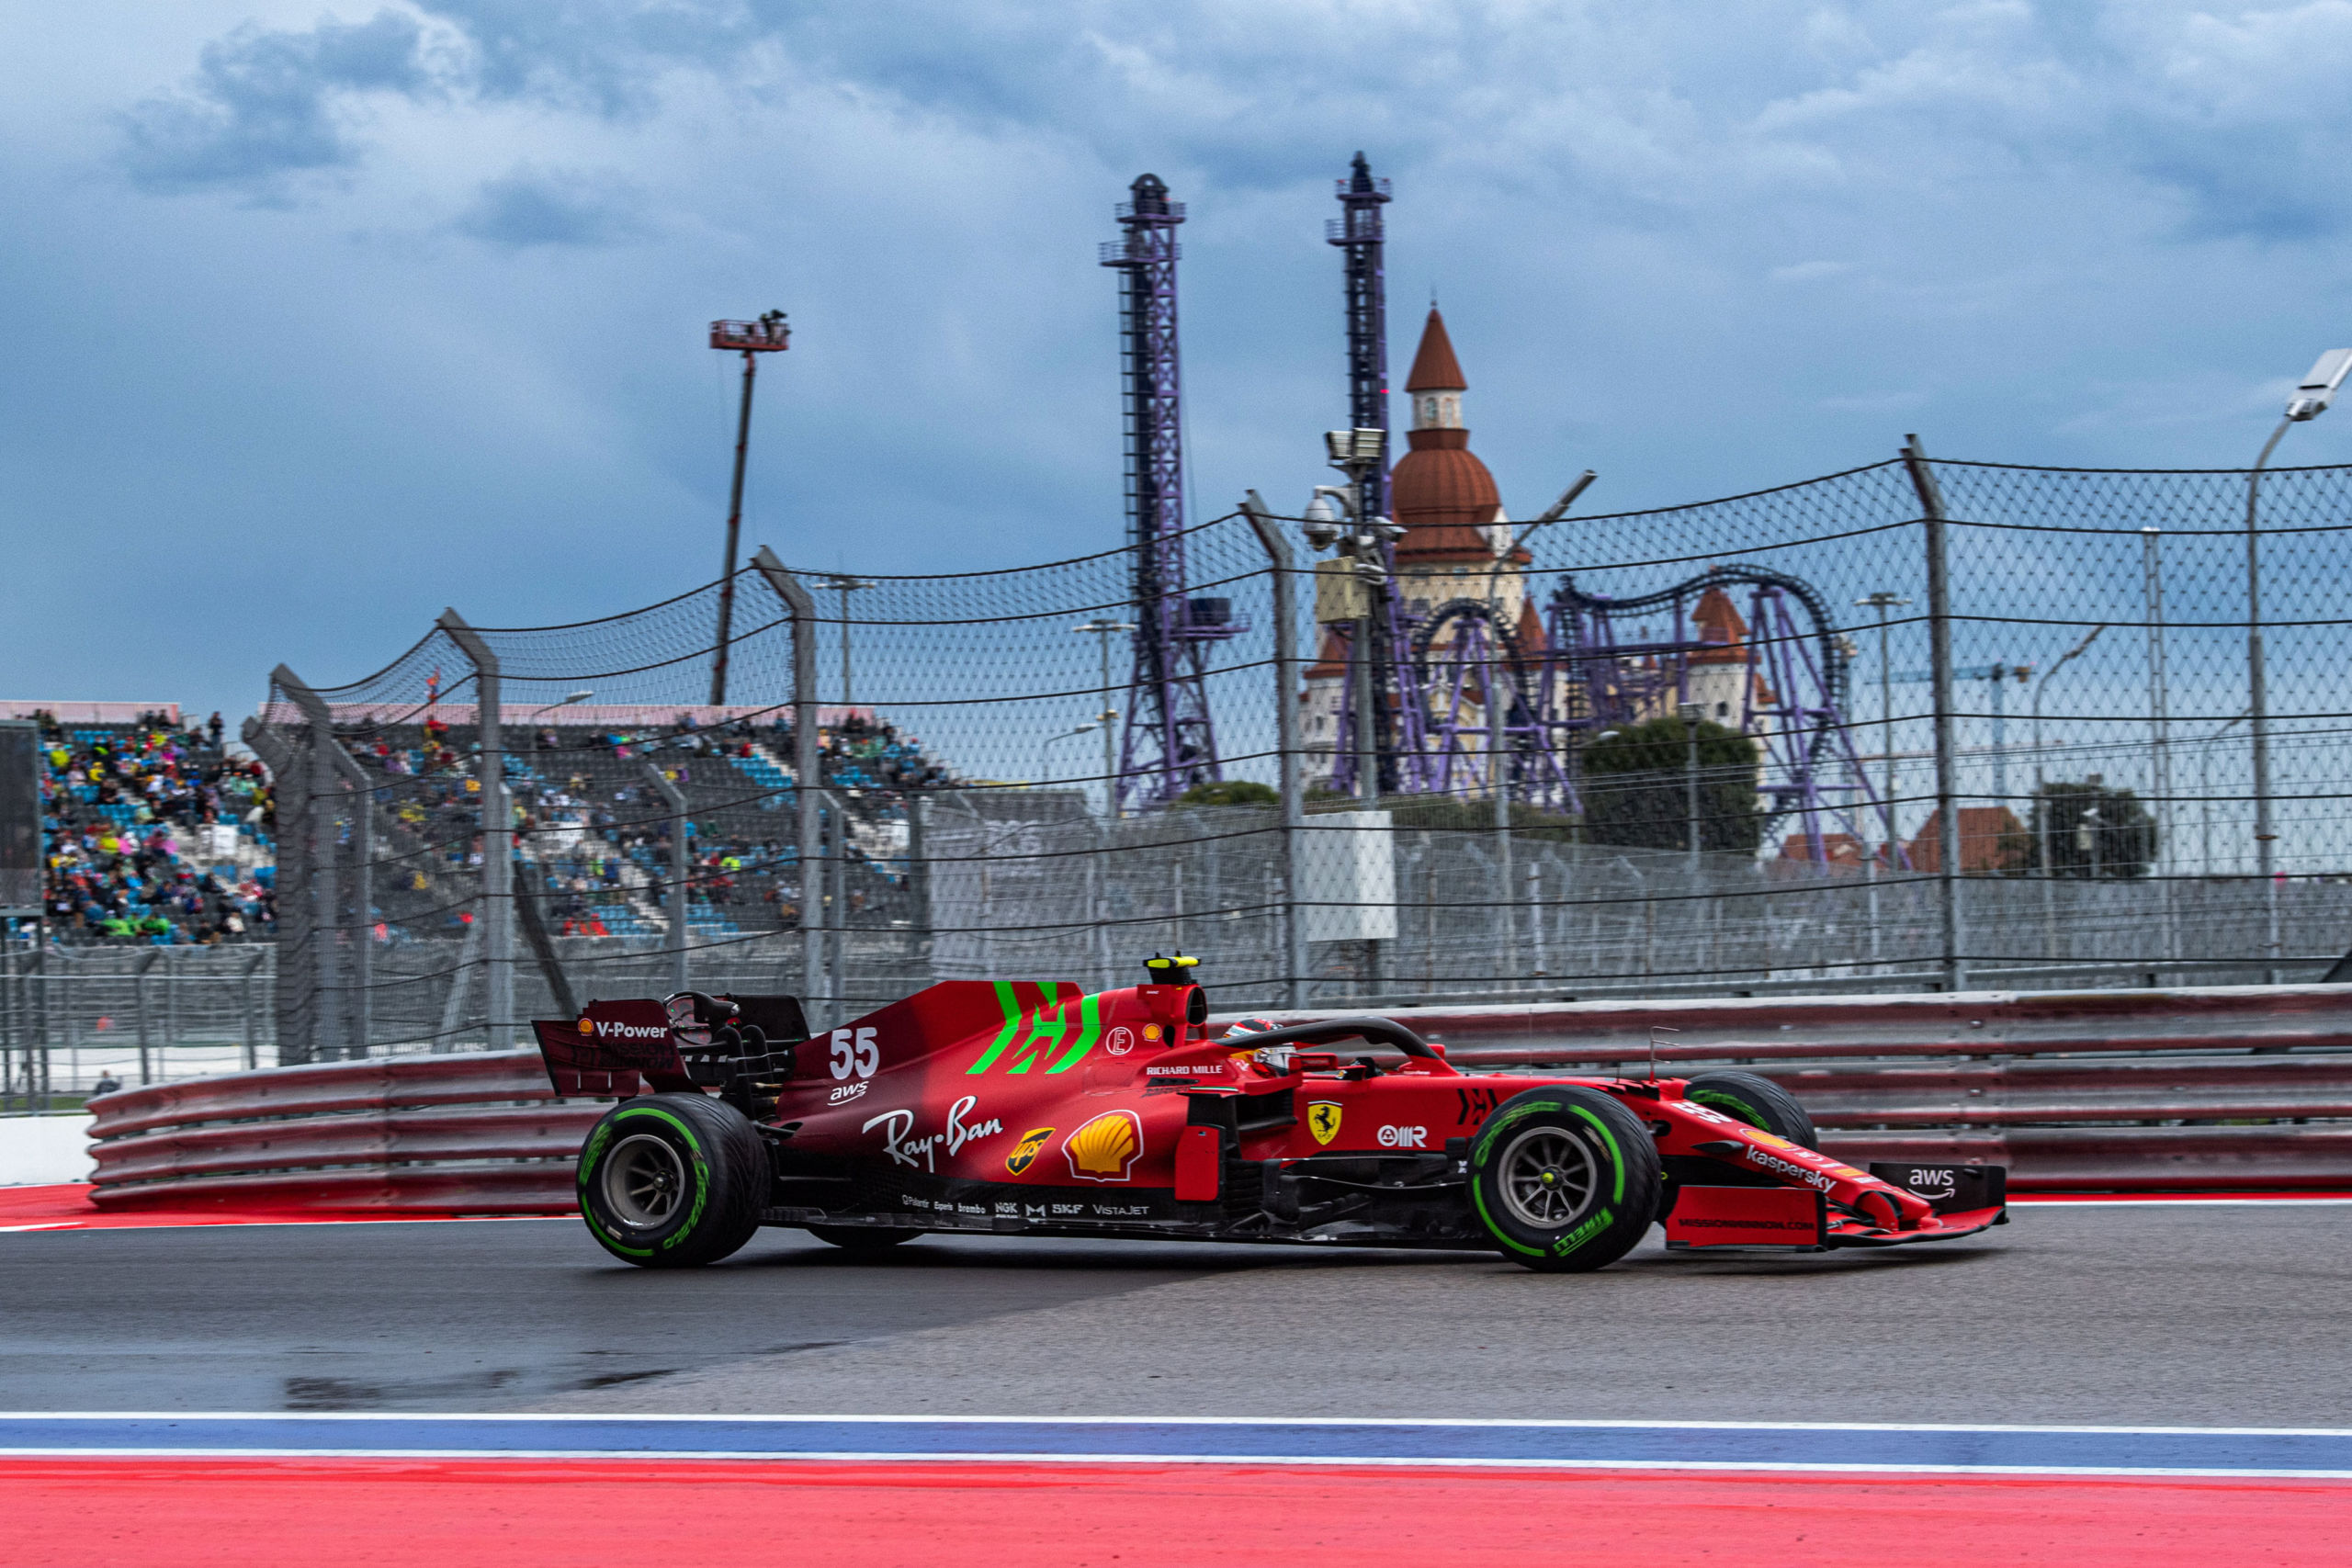 Carlos Sainz Gp Russia F1/2021 Sabato 25/09/2021 Credit: @scuderia Ferrari Press Office